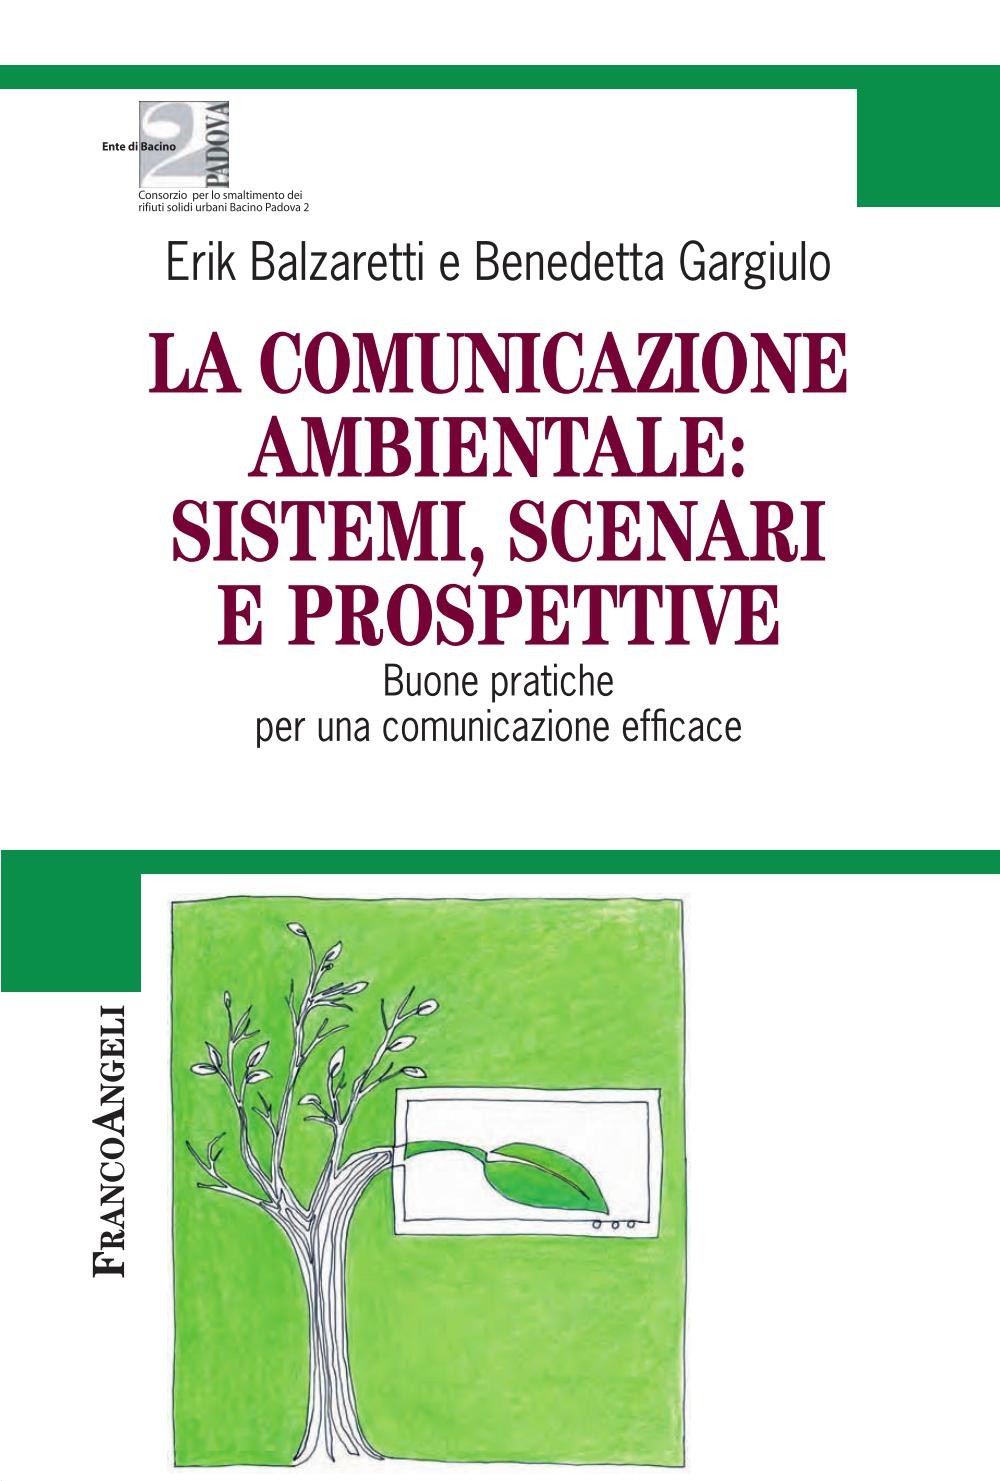 La comunicazione ambientale: sistemi, scenari e prospettive. Buone pratiche per una comunicazione efficace - Librerie.coop